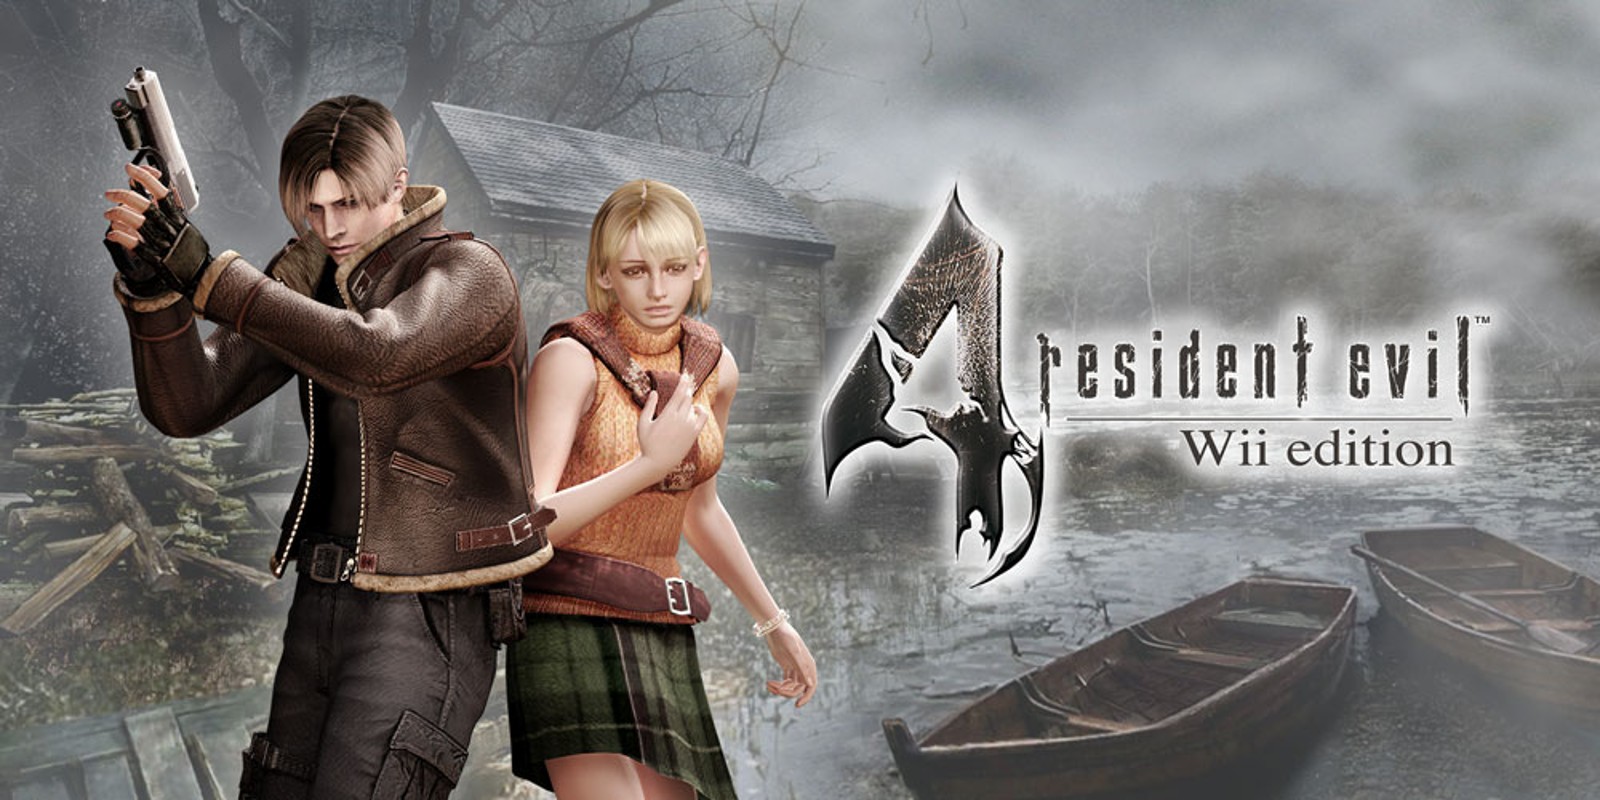 Прохождение игры Resident Evil 4 - Ultimate HD Edition # 19 (Русская версия игры) PC - Ver. HD Full.